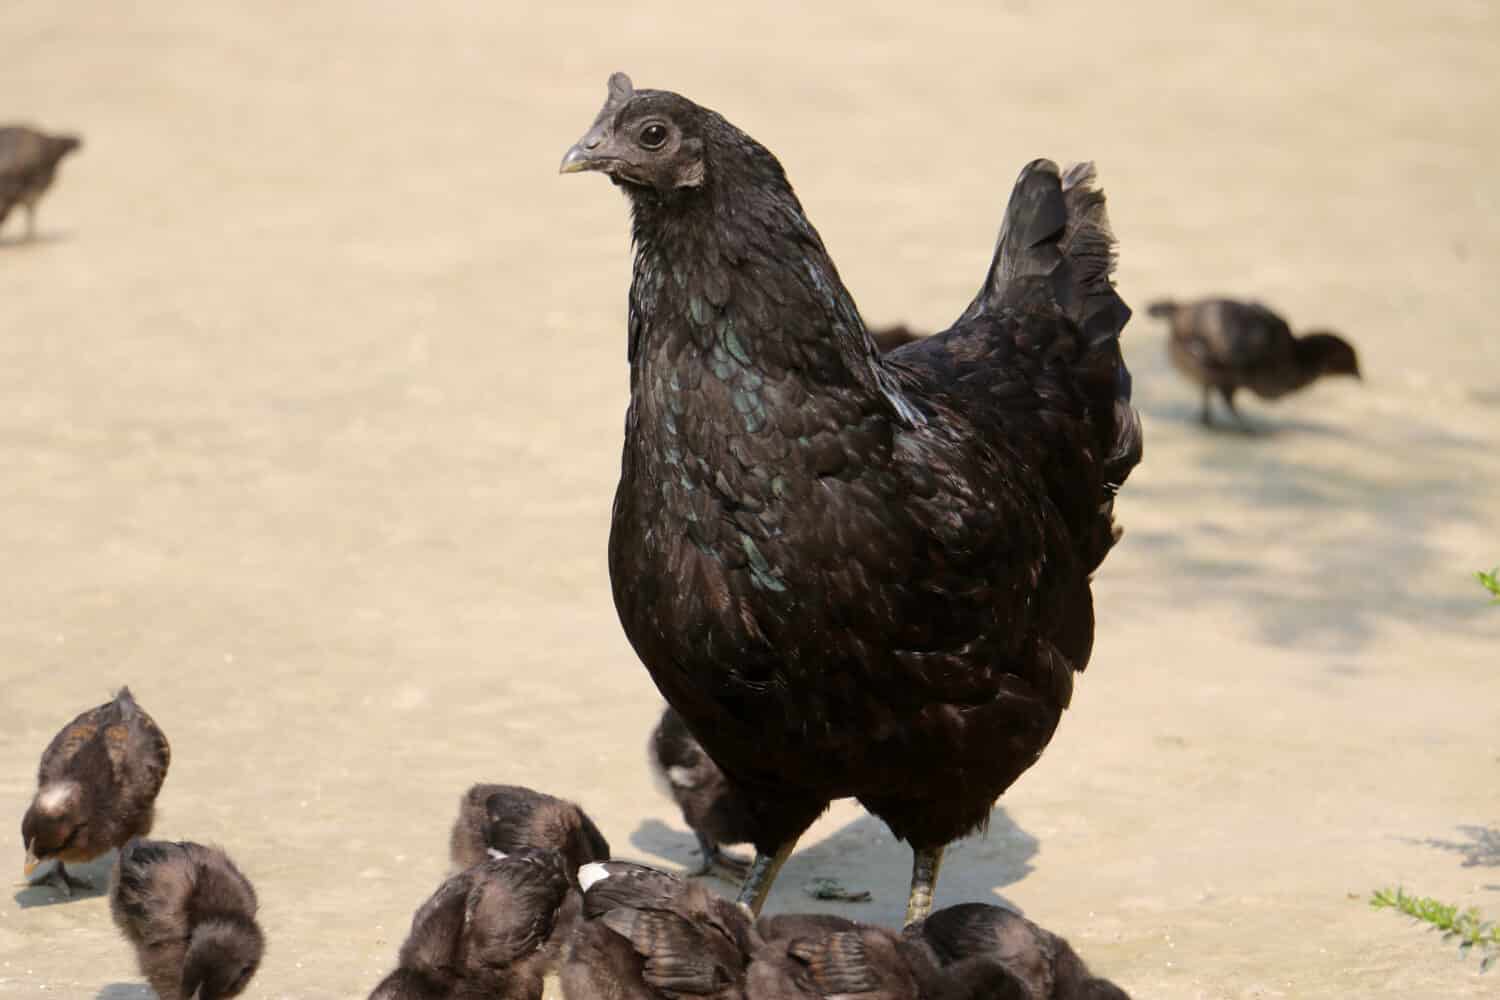 La razza di pollo Kadaknath, chiamata anche Kali Masi, è una razza indiana di pollo. Sono completamente di colore nero, compresa la loro carne e gli organi interni e si dice che siano molto nutrienti; razze di pollo nere